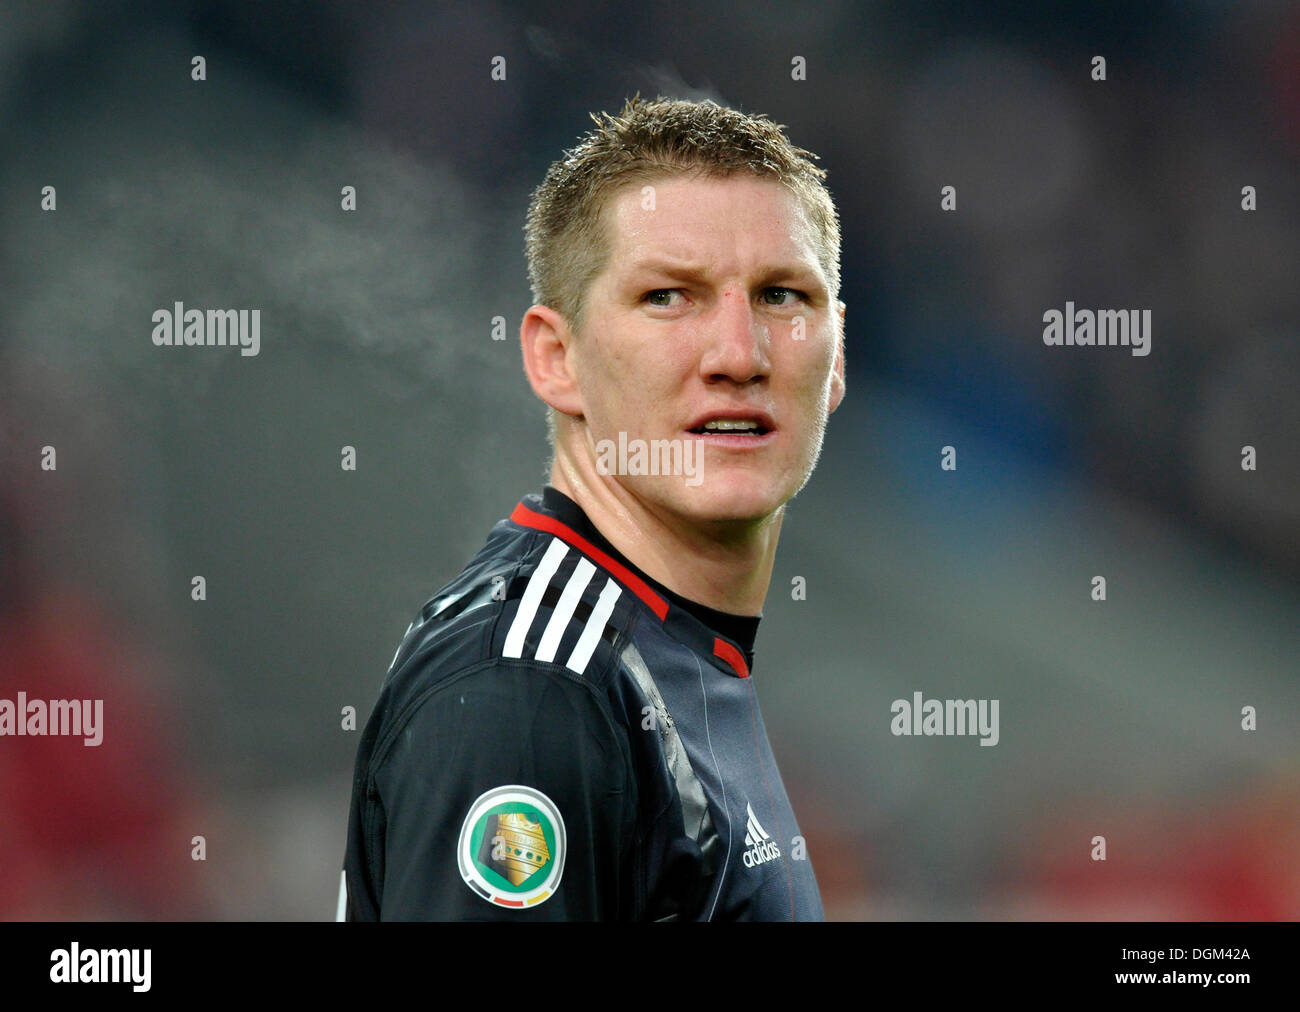 Bastian Schweinsteiger joueur de football, FC Bayern Munich, portrait Banque D'Images